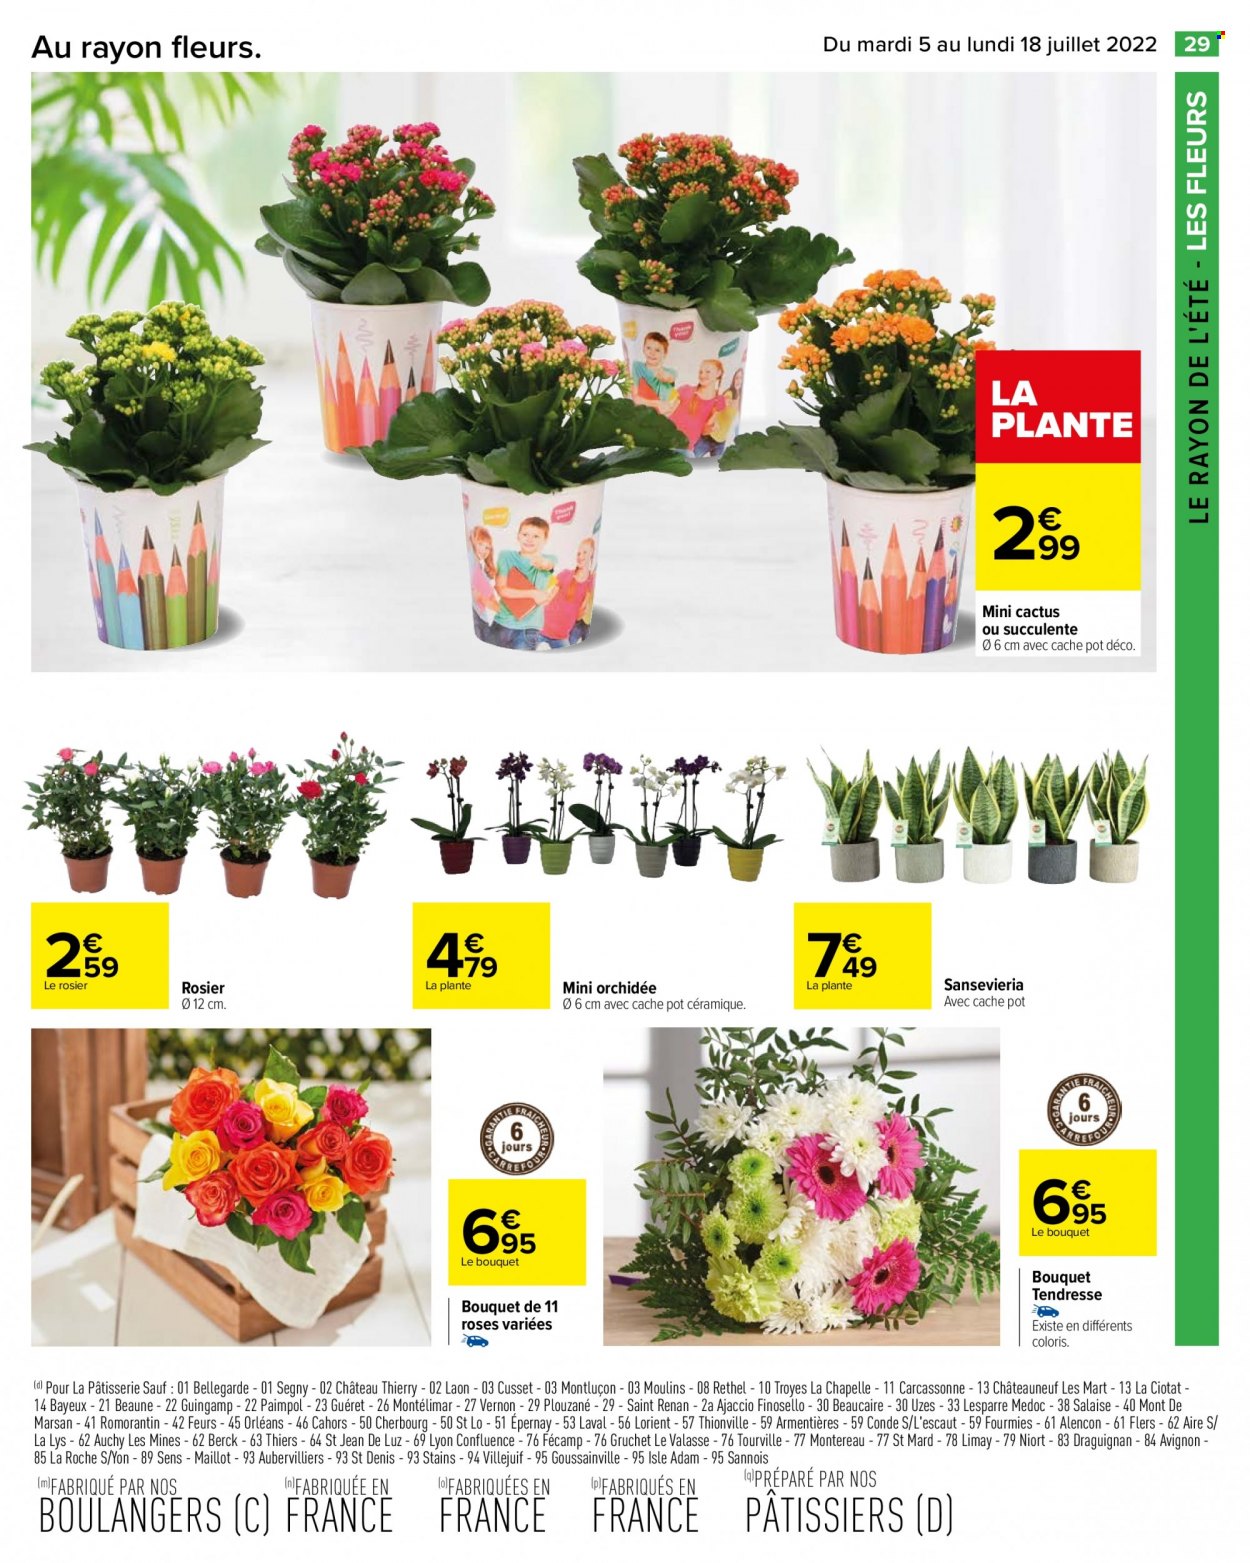 thumbnail - Catalogue Carrefour Hypermarchés - 05/07/2022 - 18/07/2022 - Produits soldés - cactus, fleur, succulente, orchidée, rosier. Page 31.